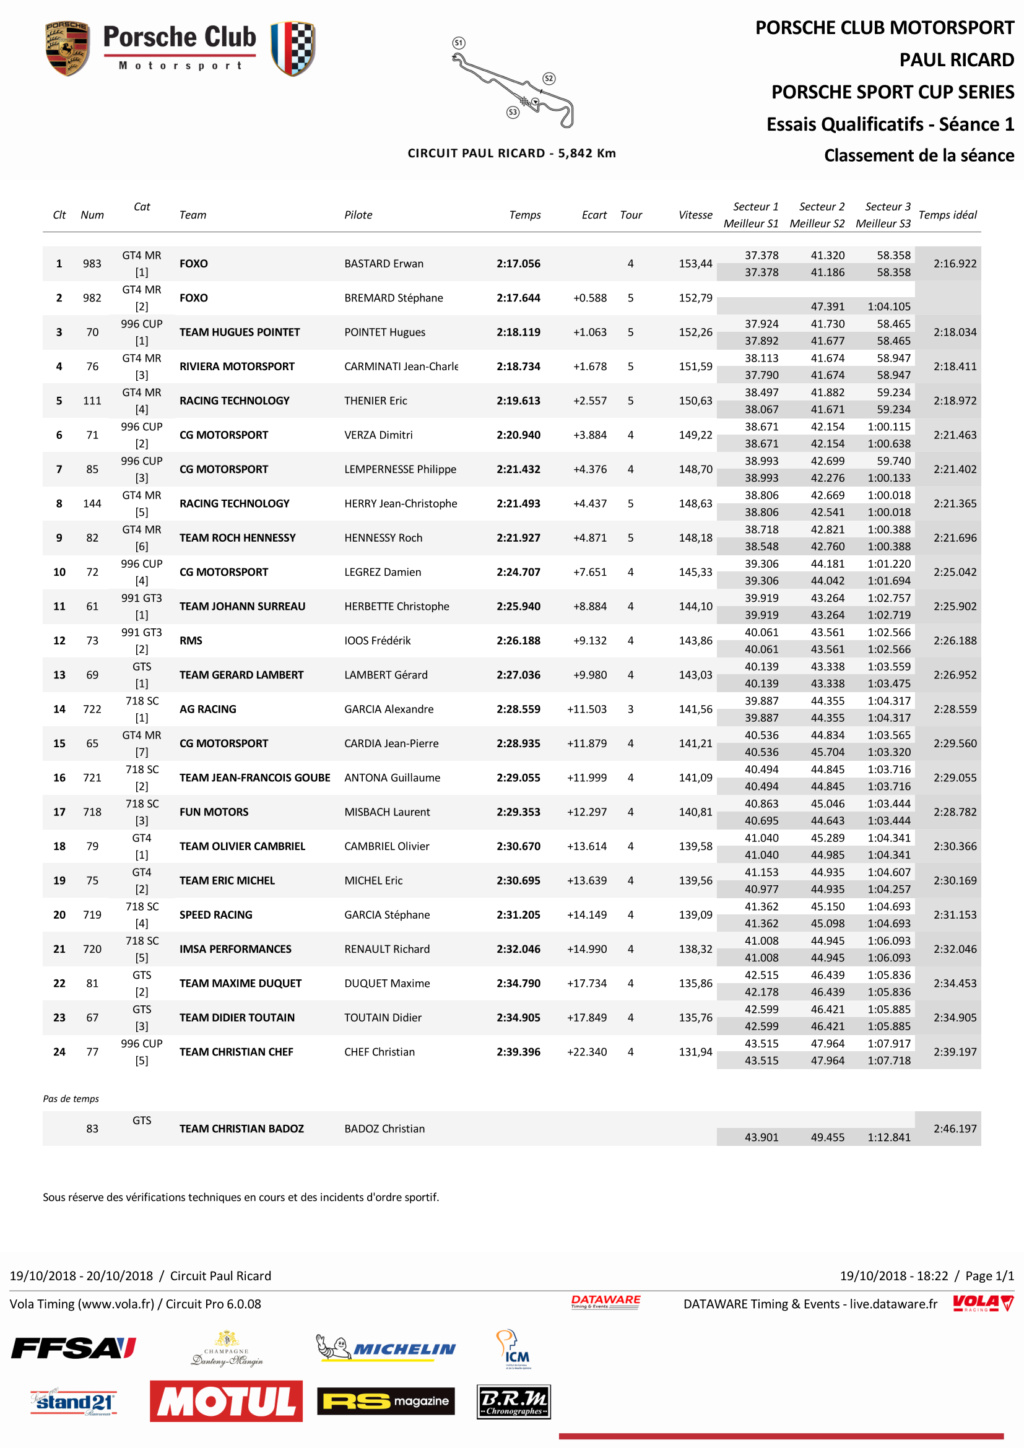  Porsche Motorsport Sport Cup Series 2018 ( post unique) - Page 2 Qualif14